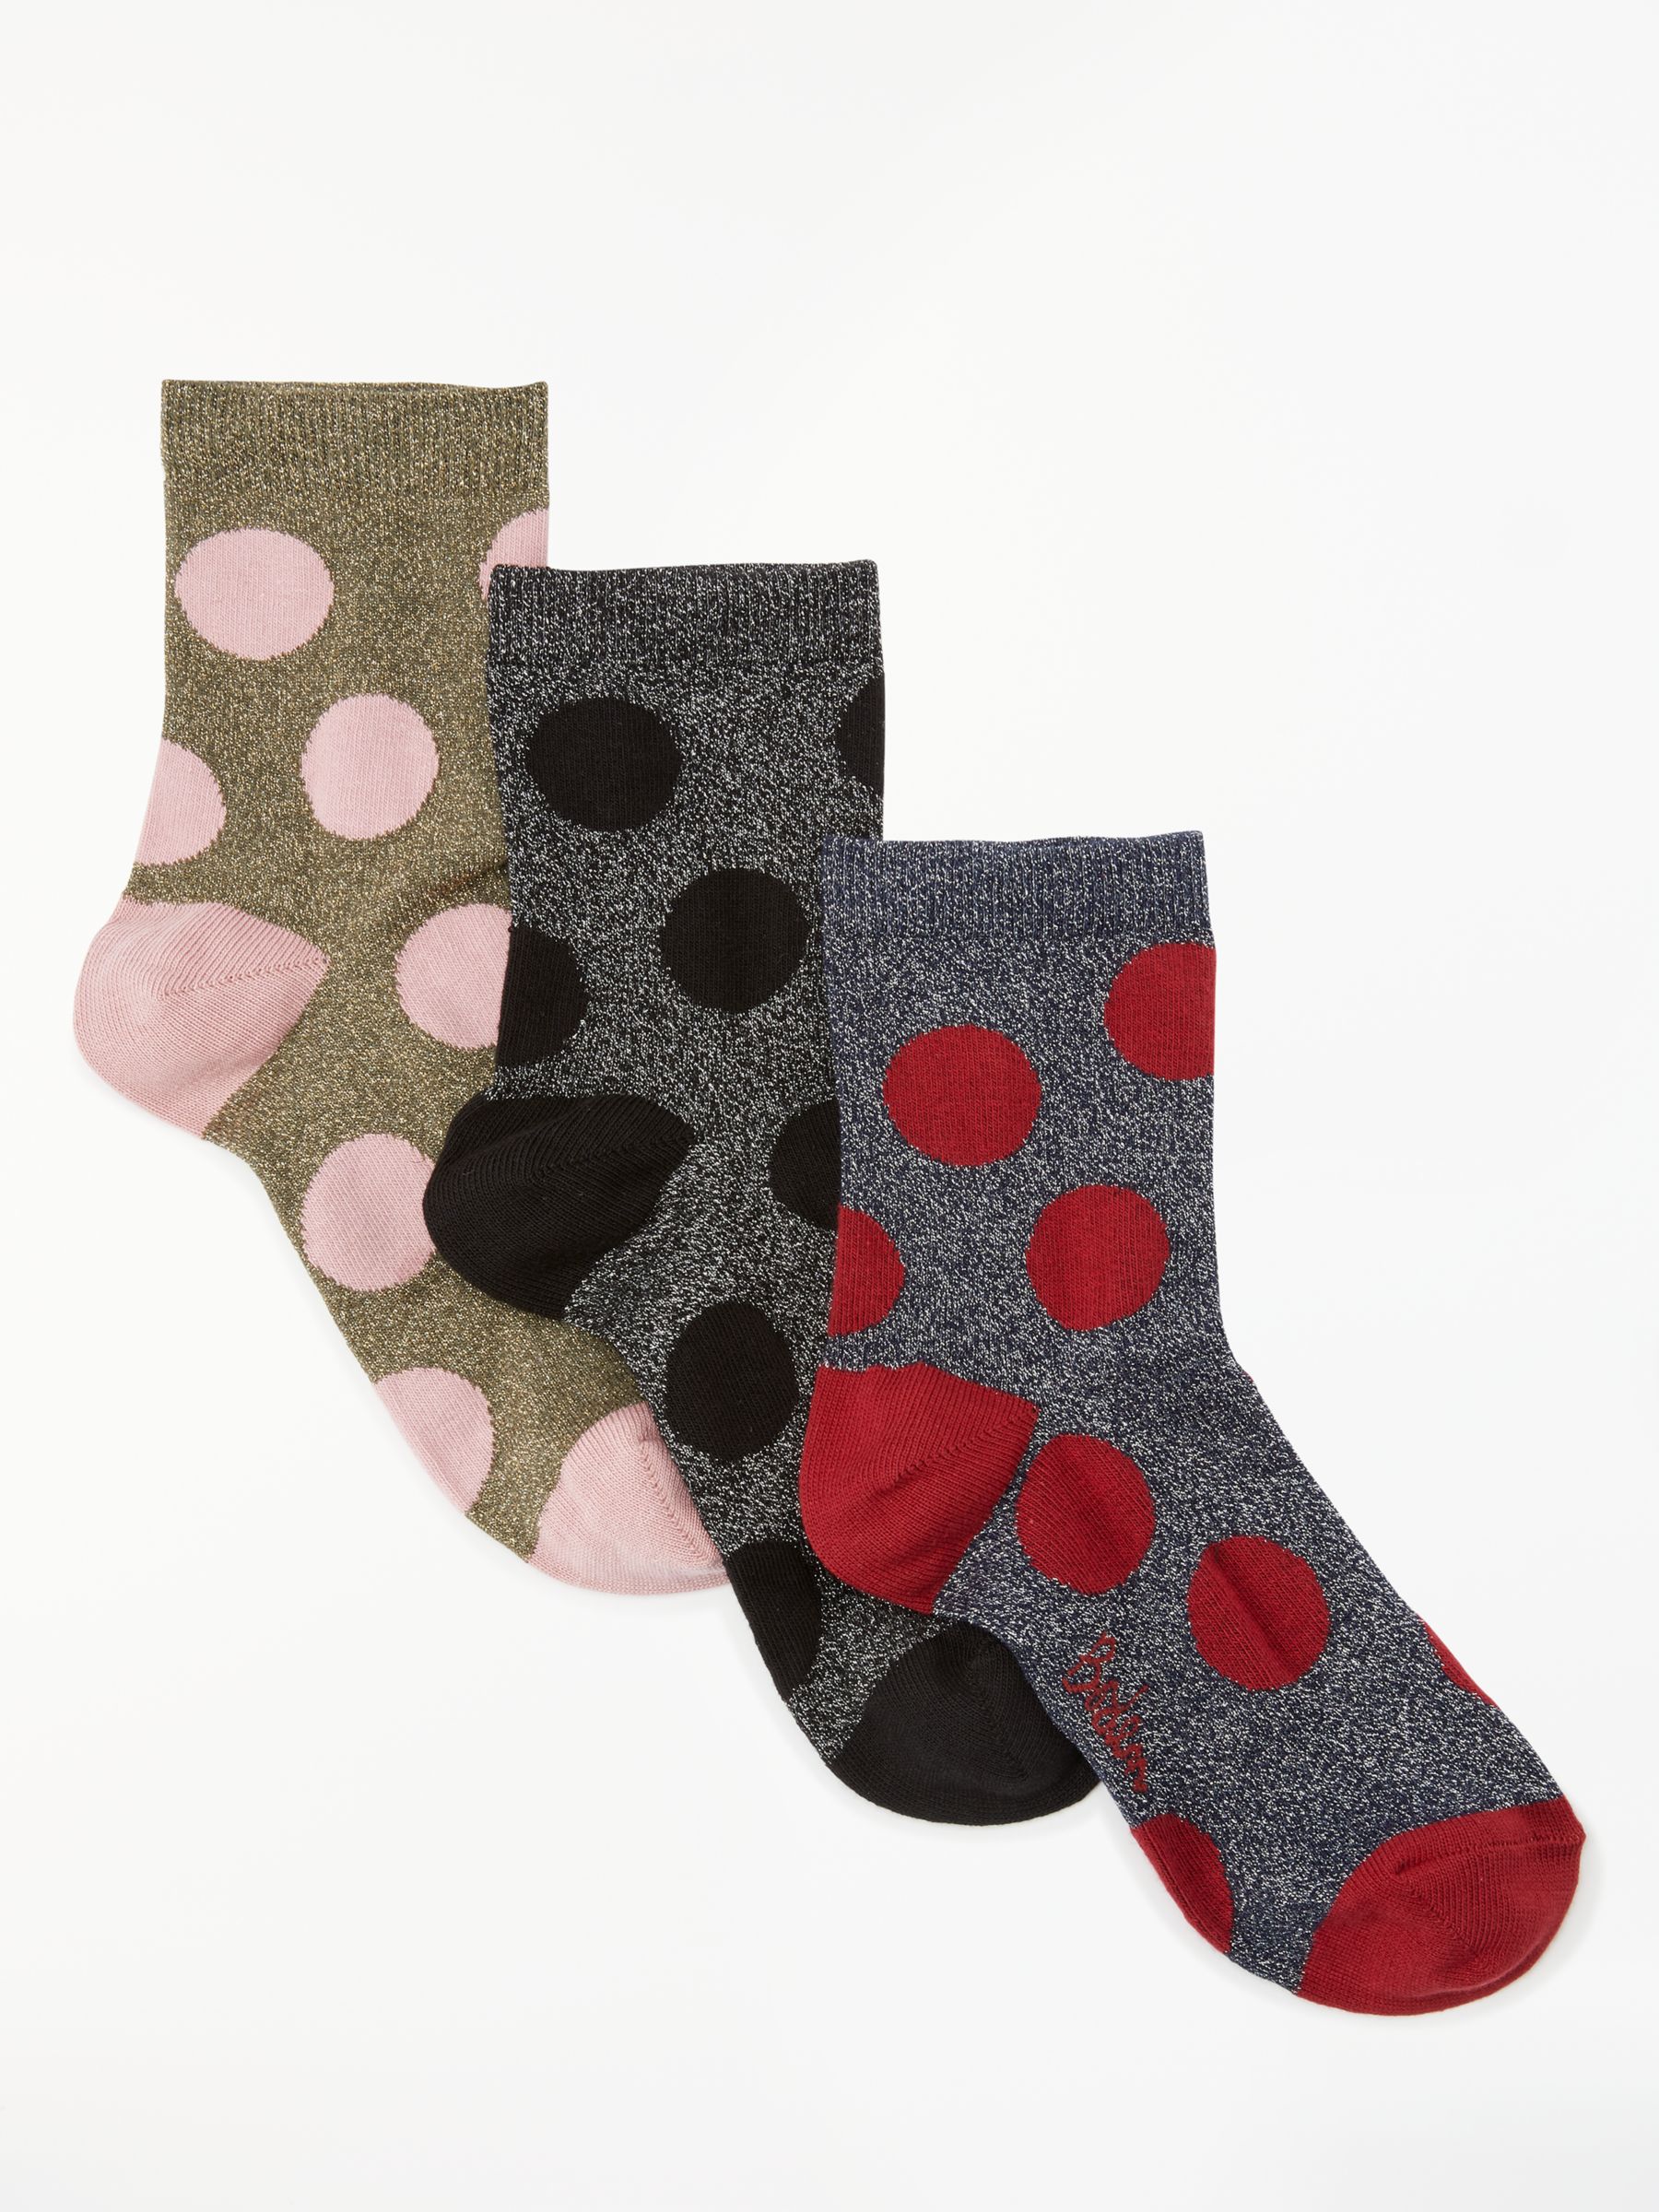 Boden Metallic Sparkle Dot Ankle Socks, Pack of 3, Multi